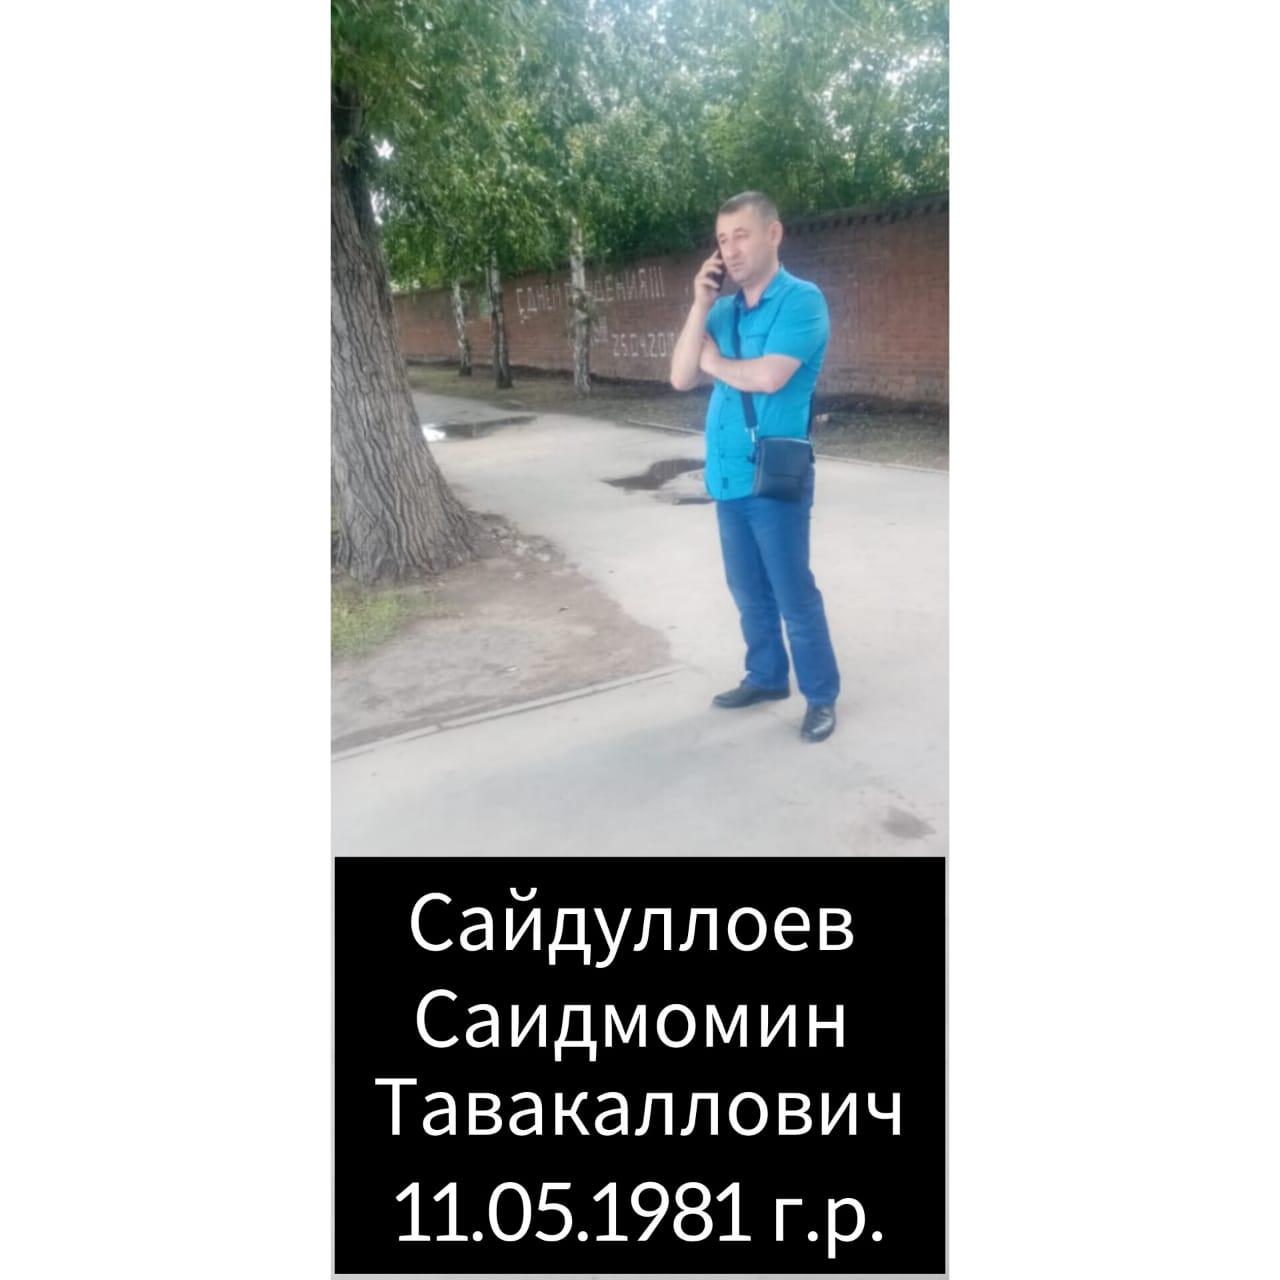 Фото «Мне сломали жизнь»: мигрант обратился к Путину из-за отбытого в Новосибирске срока за наркотики 4